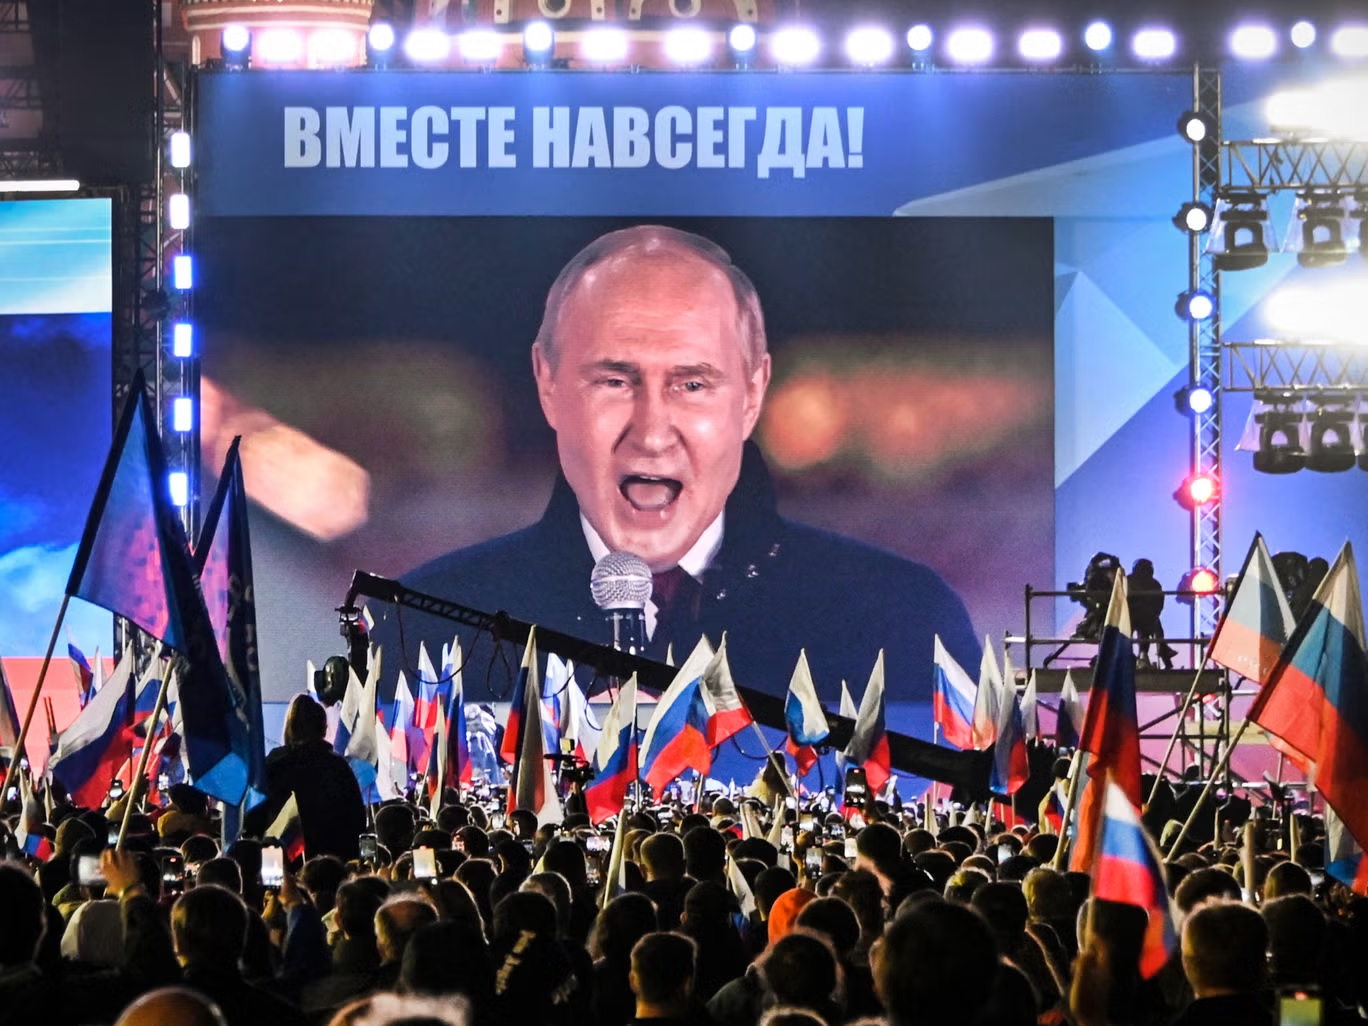 الرئيس بوتين يلقي كلمة أمام حشد في موسكو بمناسبة ضم أربع مناطق من أوكرانيا (أ ف ب/غيتي)